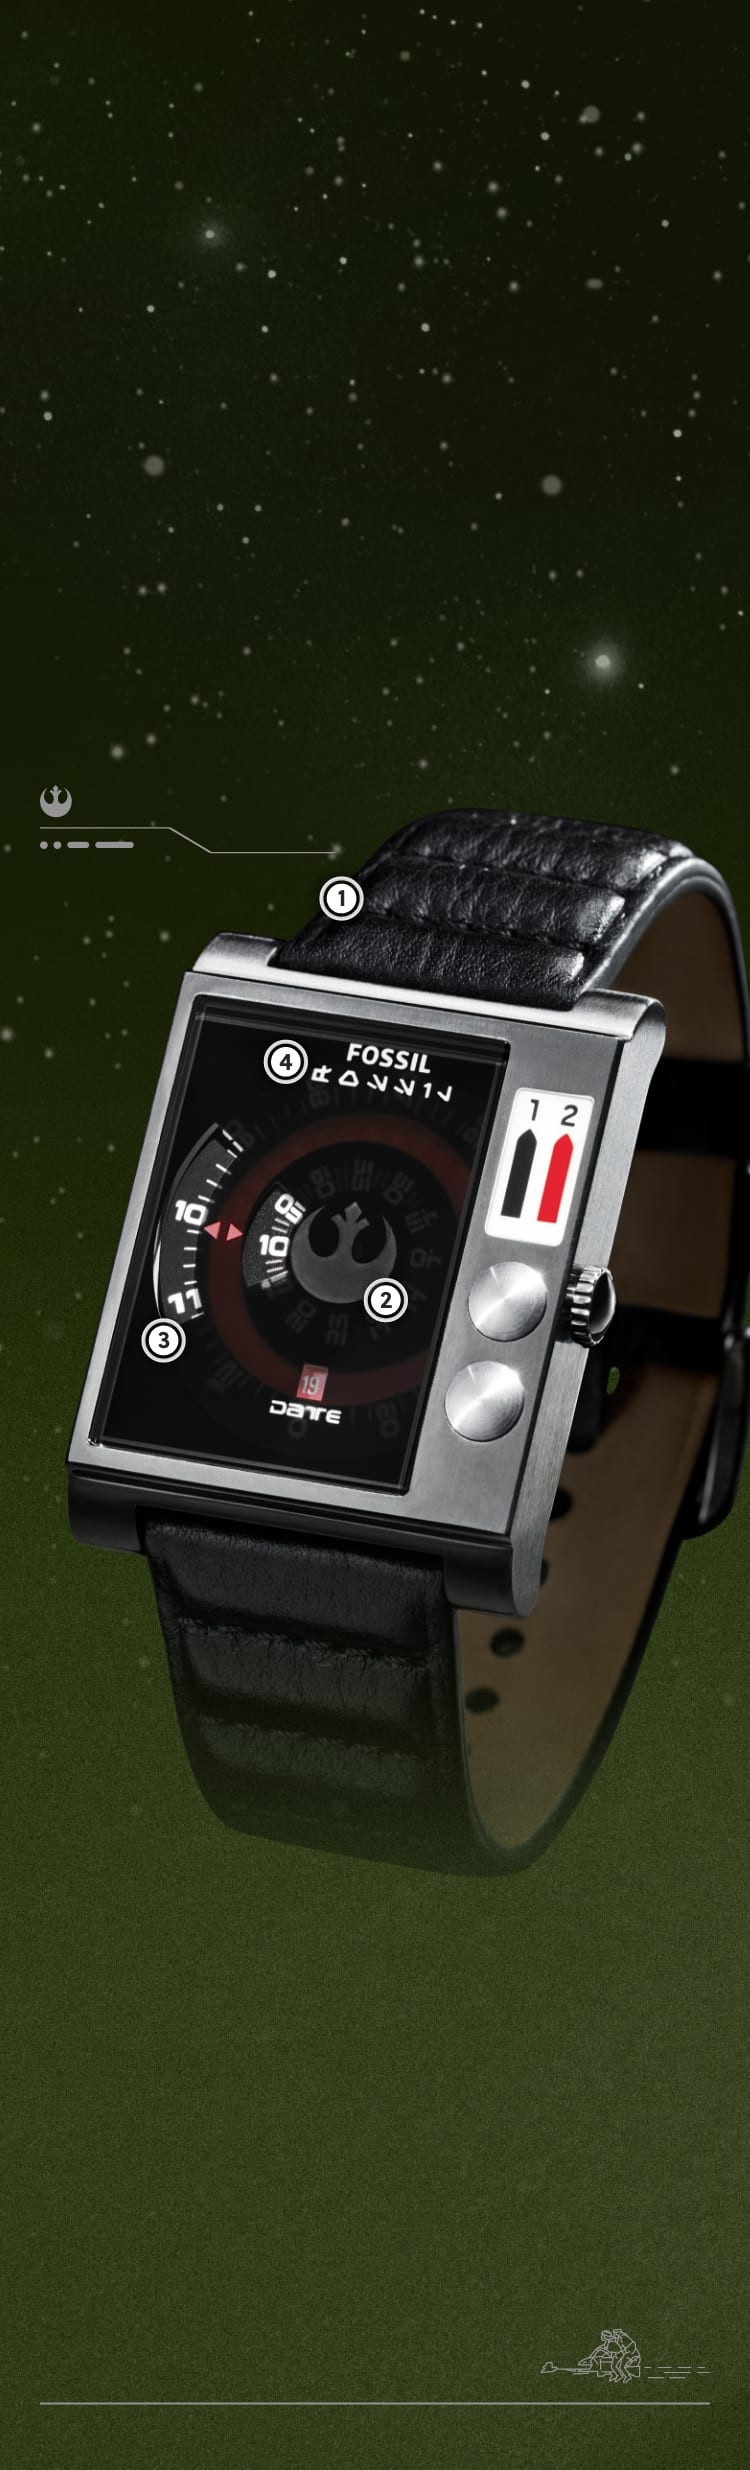 Un gros plan d’une montre carrée noire avec lecture de l’heure sur disques et bracelet en cuir renforcé